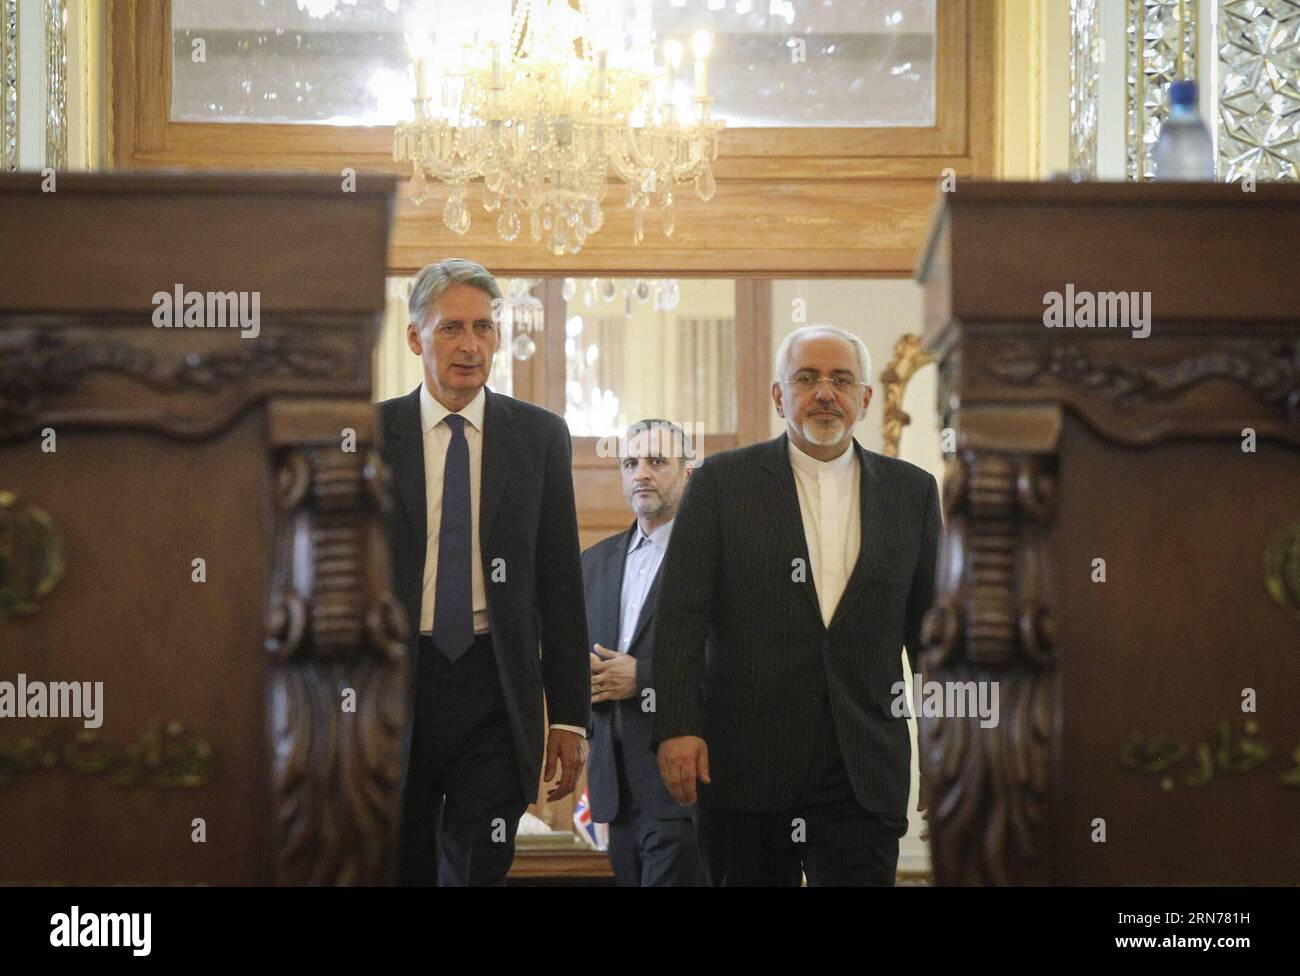 (150824) -- TEHERAN, 23. August 2015 -- der iranische Außenminister Mohammad-Javad Zarif (R) und sein britischer Amtskollege Philip Hammond (L) treffen am 23. August 2015 zu einer gemeinsamen Pressekonferenz in Teheran (Iran) ein. Die Botschaften in Teheran und London werden auf der Ebene der Affären wieder eröffnet, was ein neuer Anfang für die Beziehungen zwischen dem Iran und Großbritannien sein wird, sagte der iranische Außenminister Mohammad-Javad Zarif auf einer gemeinsamen Pressekonferenz mit seinem britischen Amtskollegen Philip Hammond. )(zhf) IRAN-TEHRAN-BRITAIN-FM-MEETING AhmadxHalabisaz PUBLICATIONxNOTxINxCHN 150824 TEHERAN 2. August Stockfoto